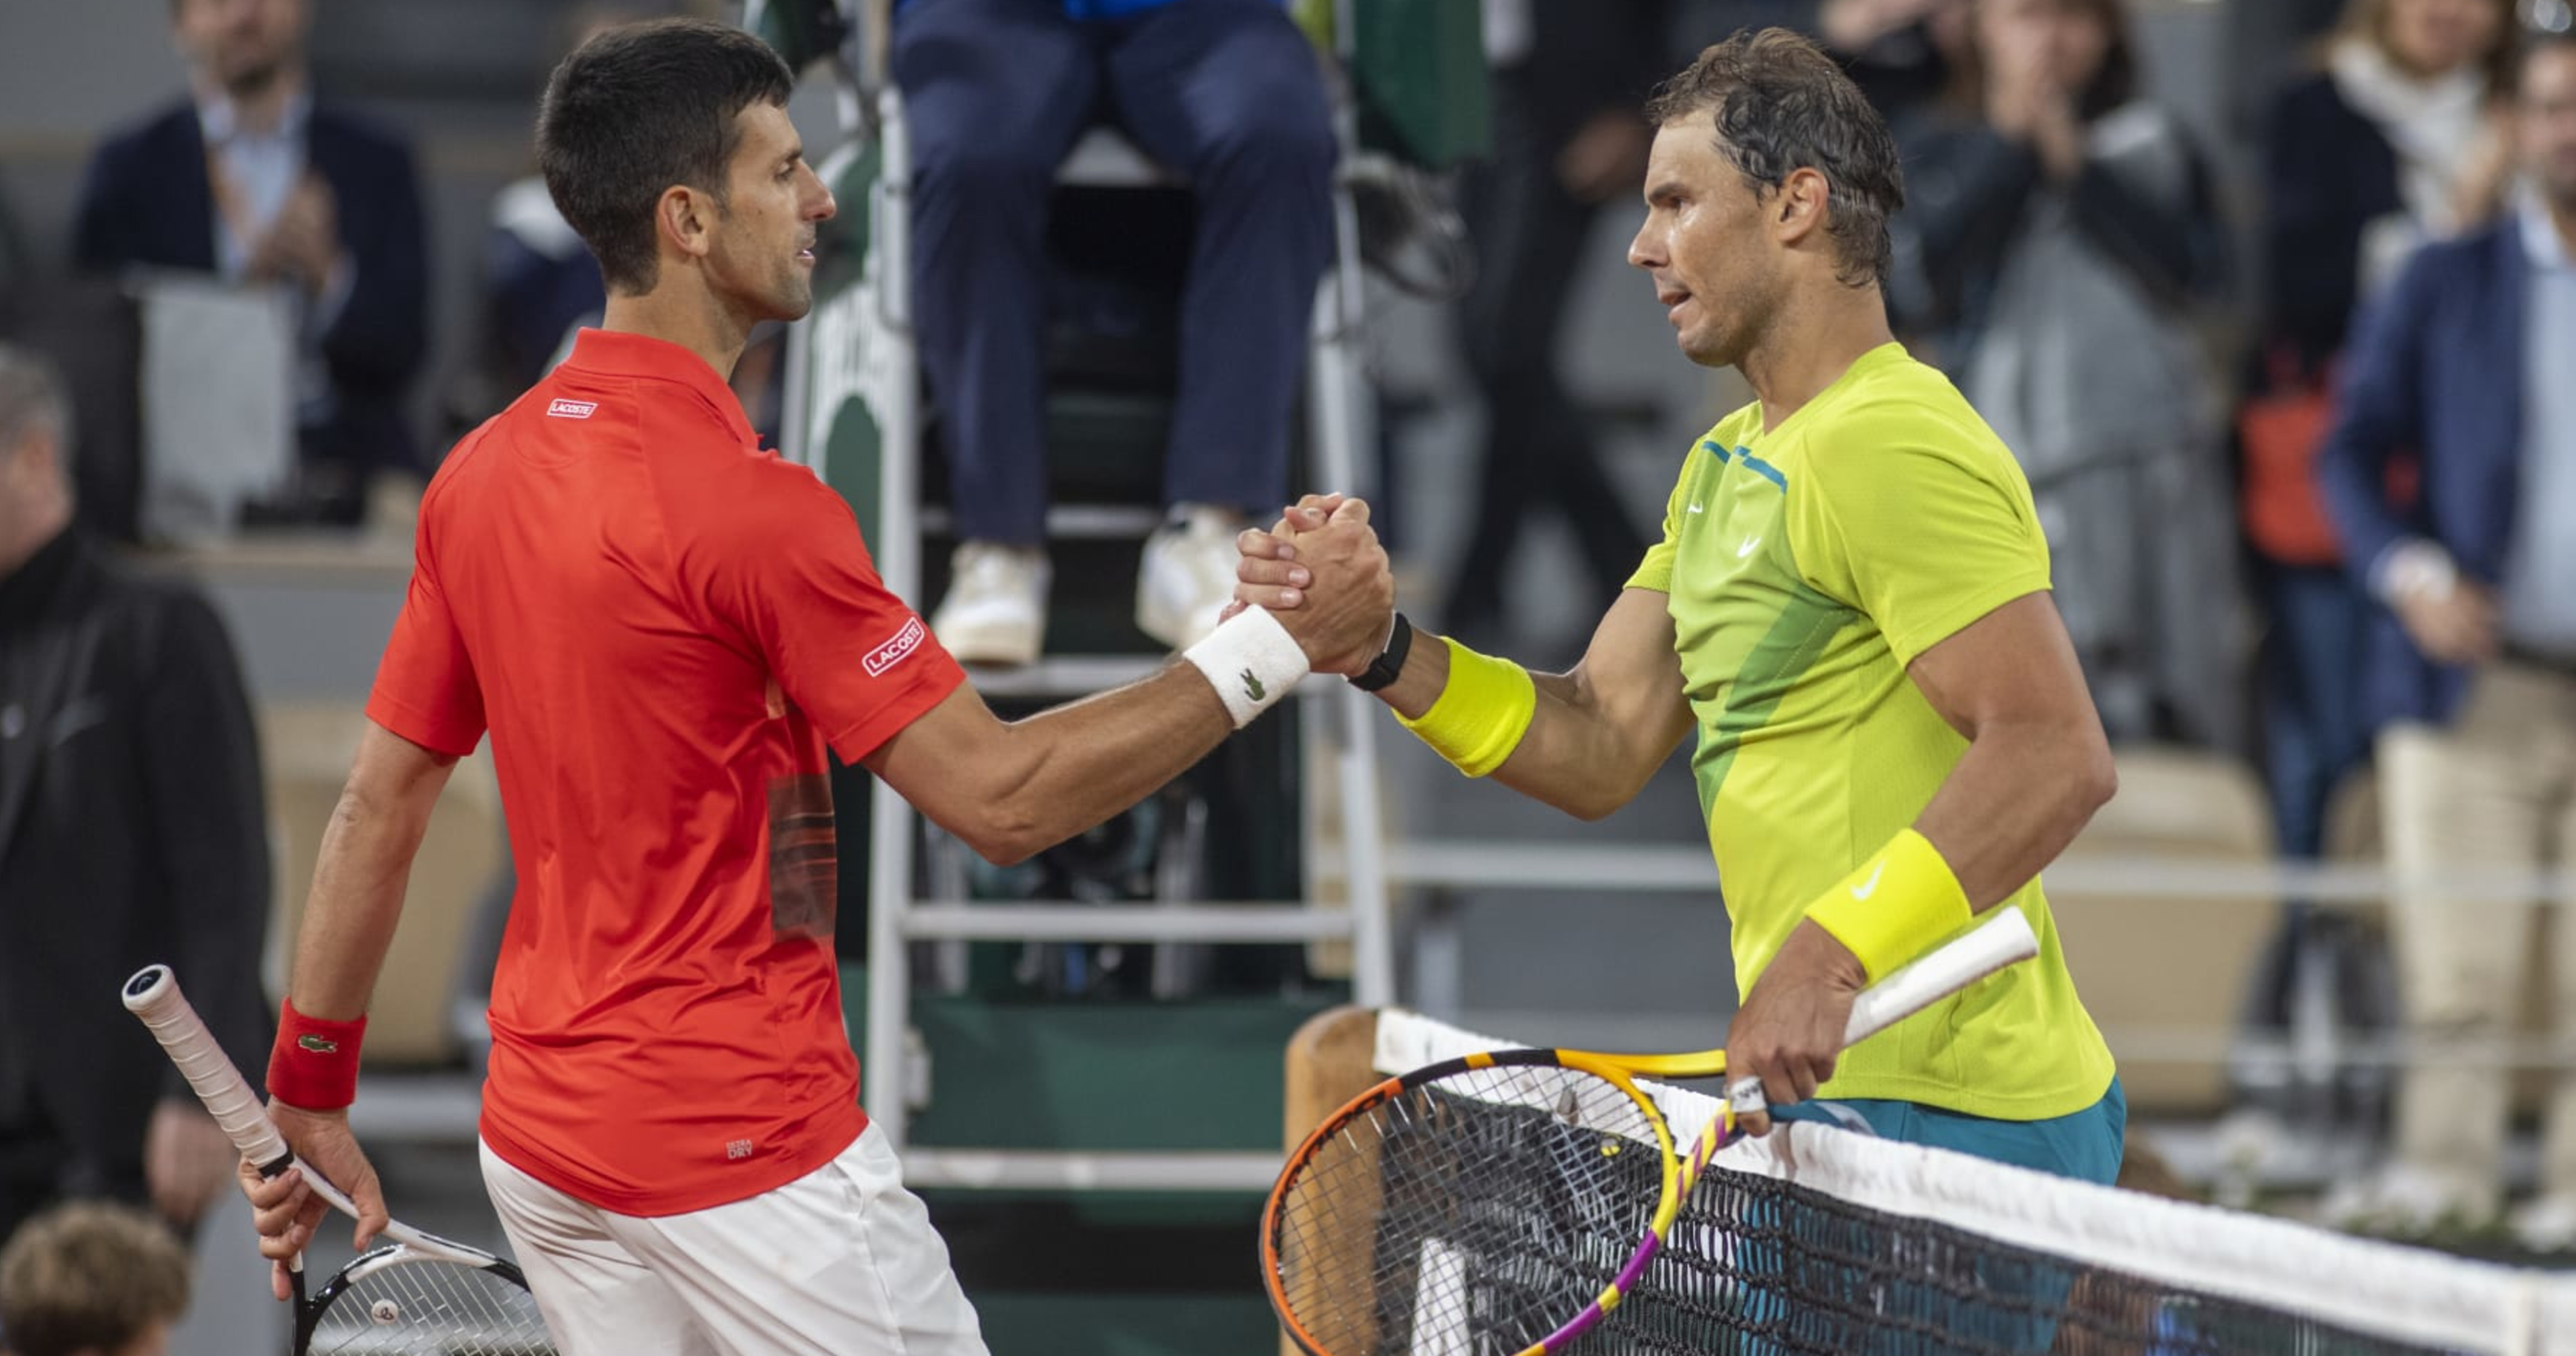 Rafael Nadal Novak Djokovic Being Tennis GOAT Is Indisputable